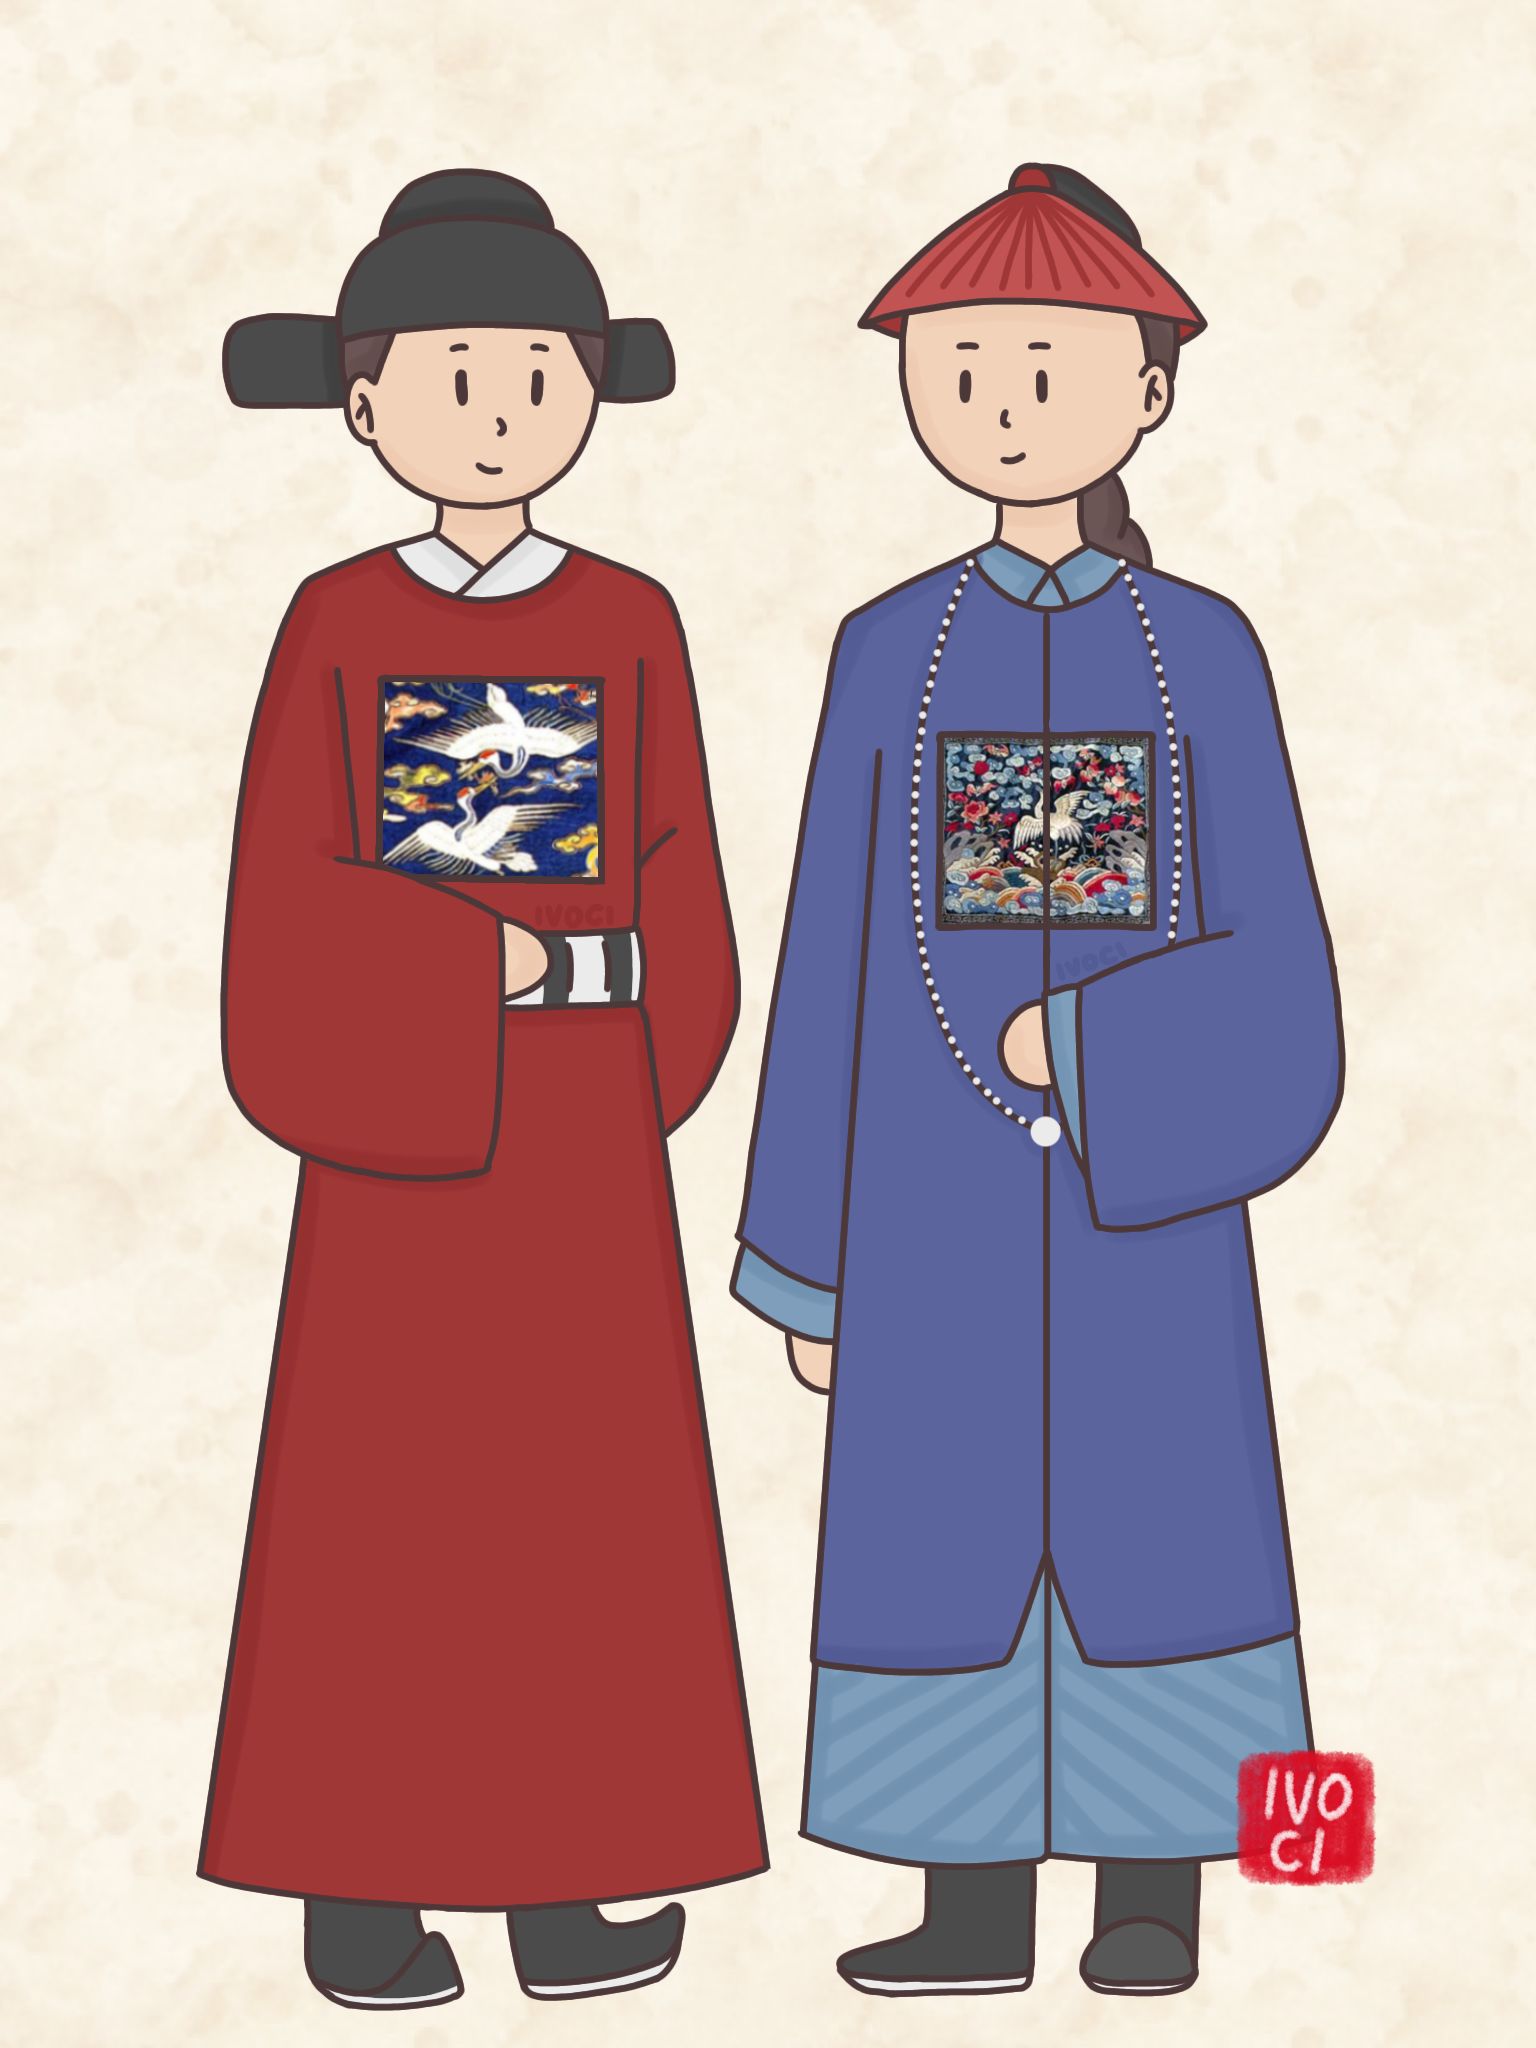 ivoci - Buzi 补子, Ming & Qing Dynasties Officials' Rank Badge - 1